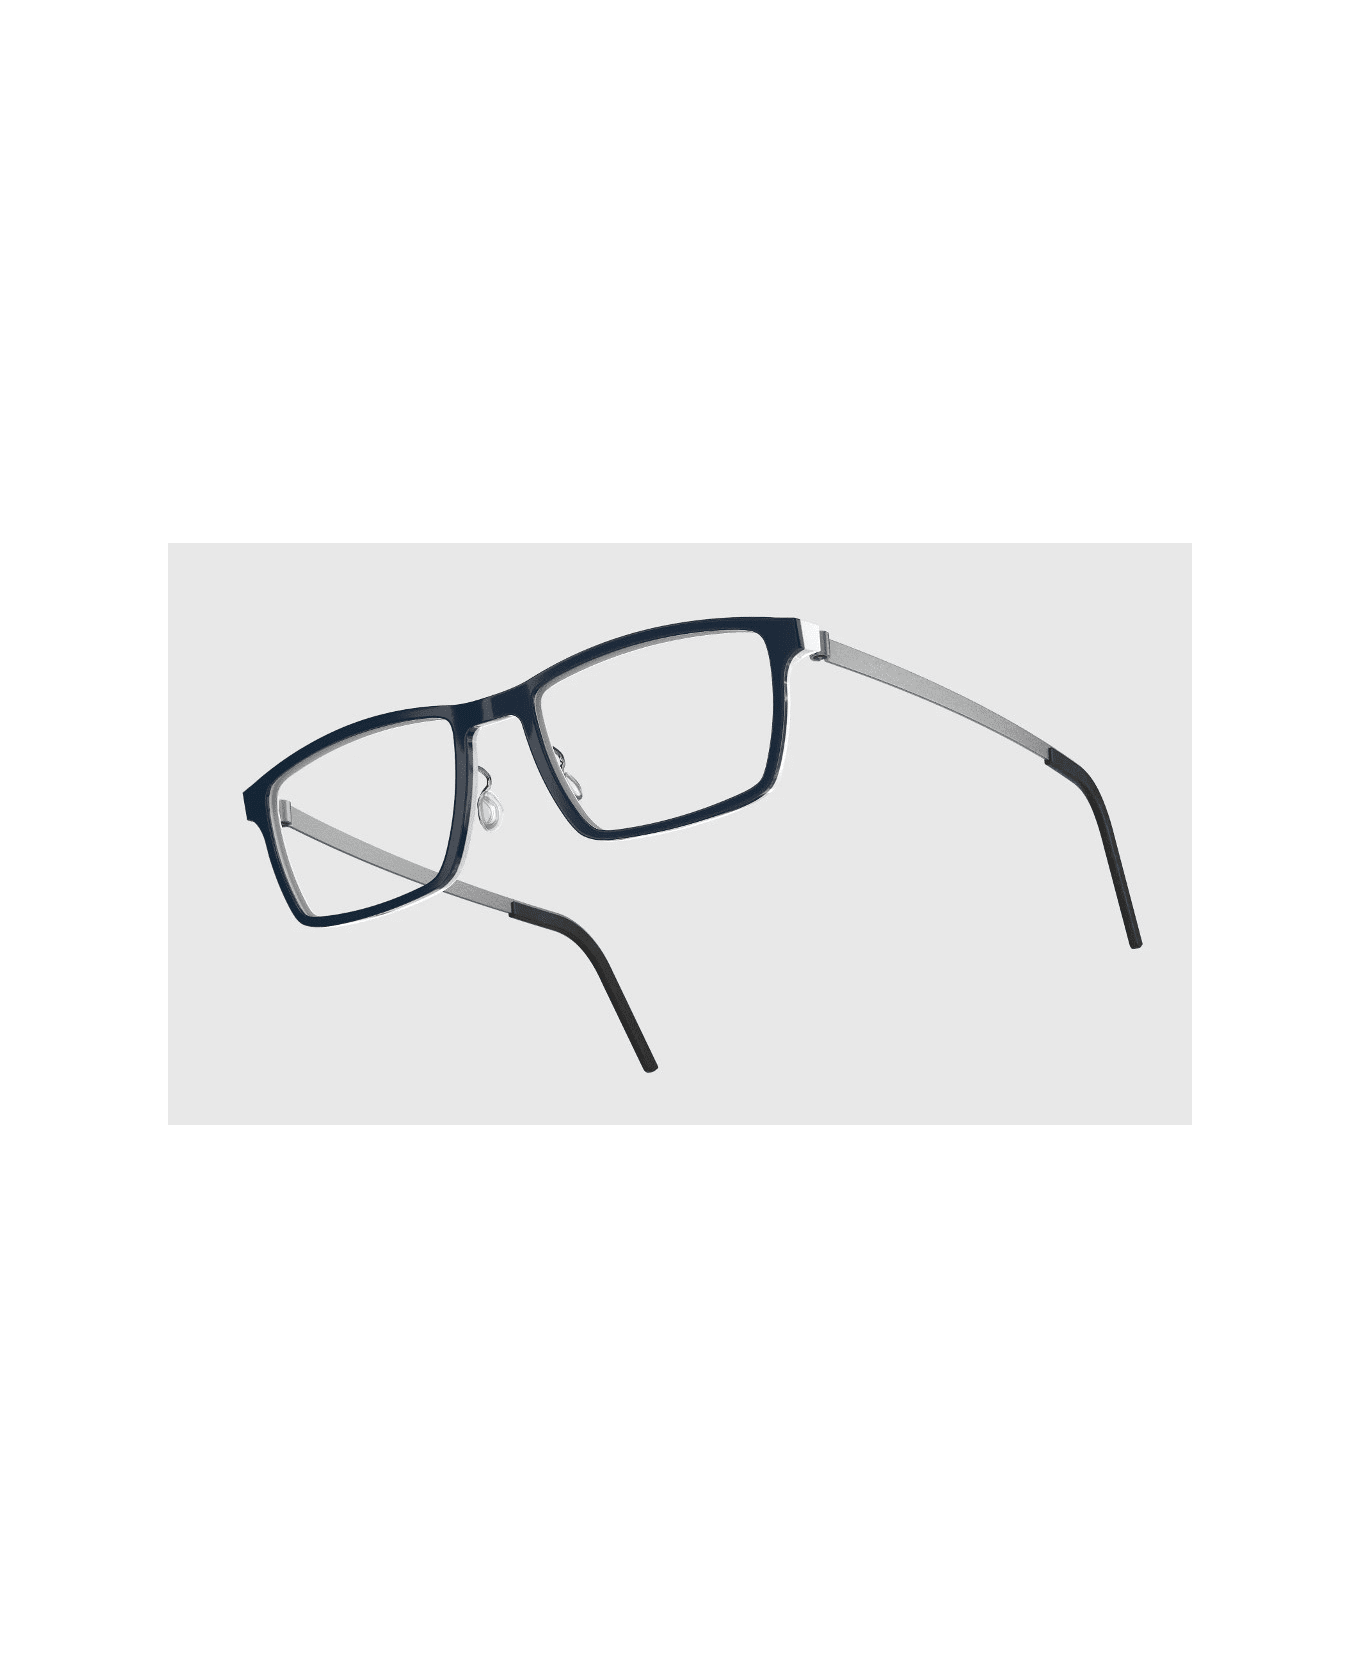 LINDBERG ACE 1228 AH06 Glasses アイウェア